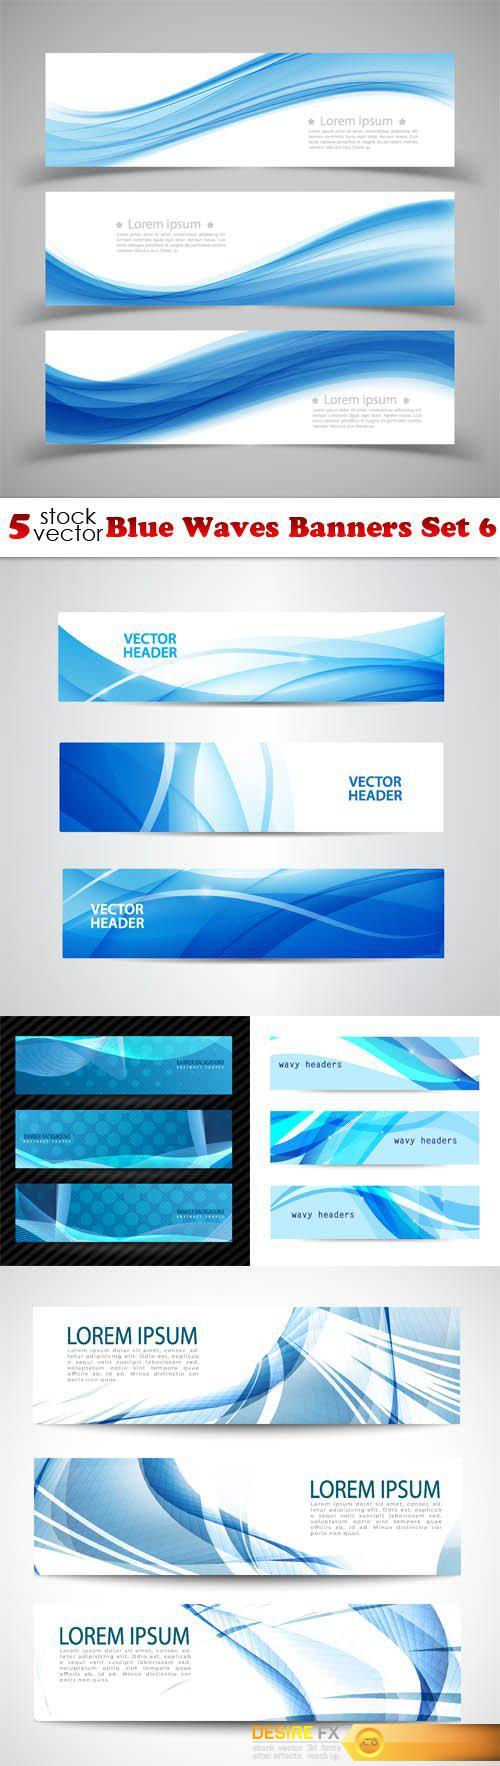 Vectors - Blue Waves Banners Set 6